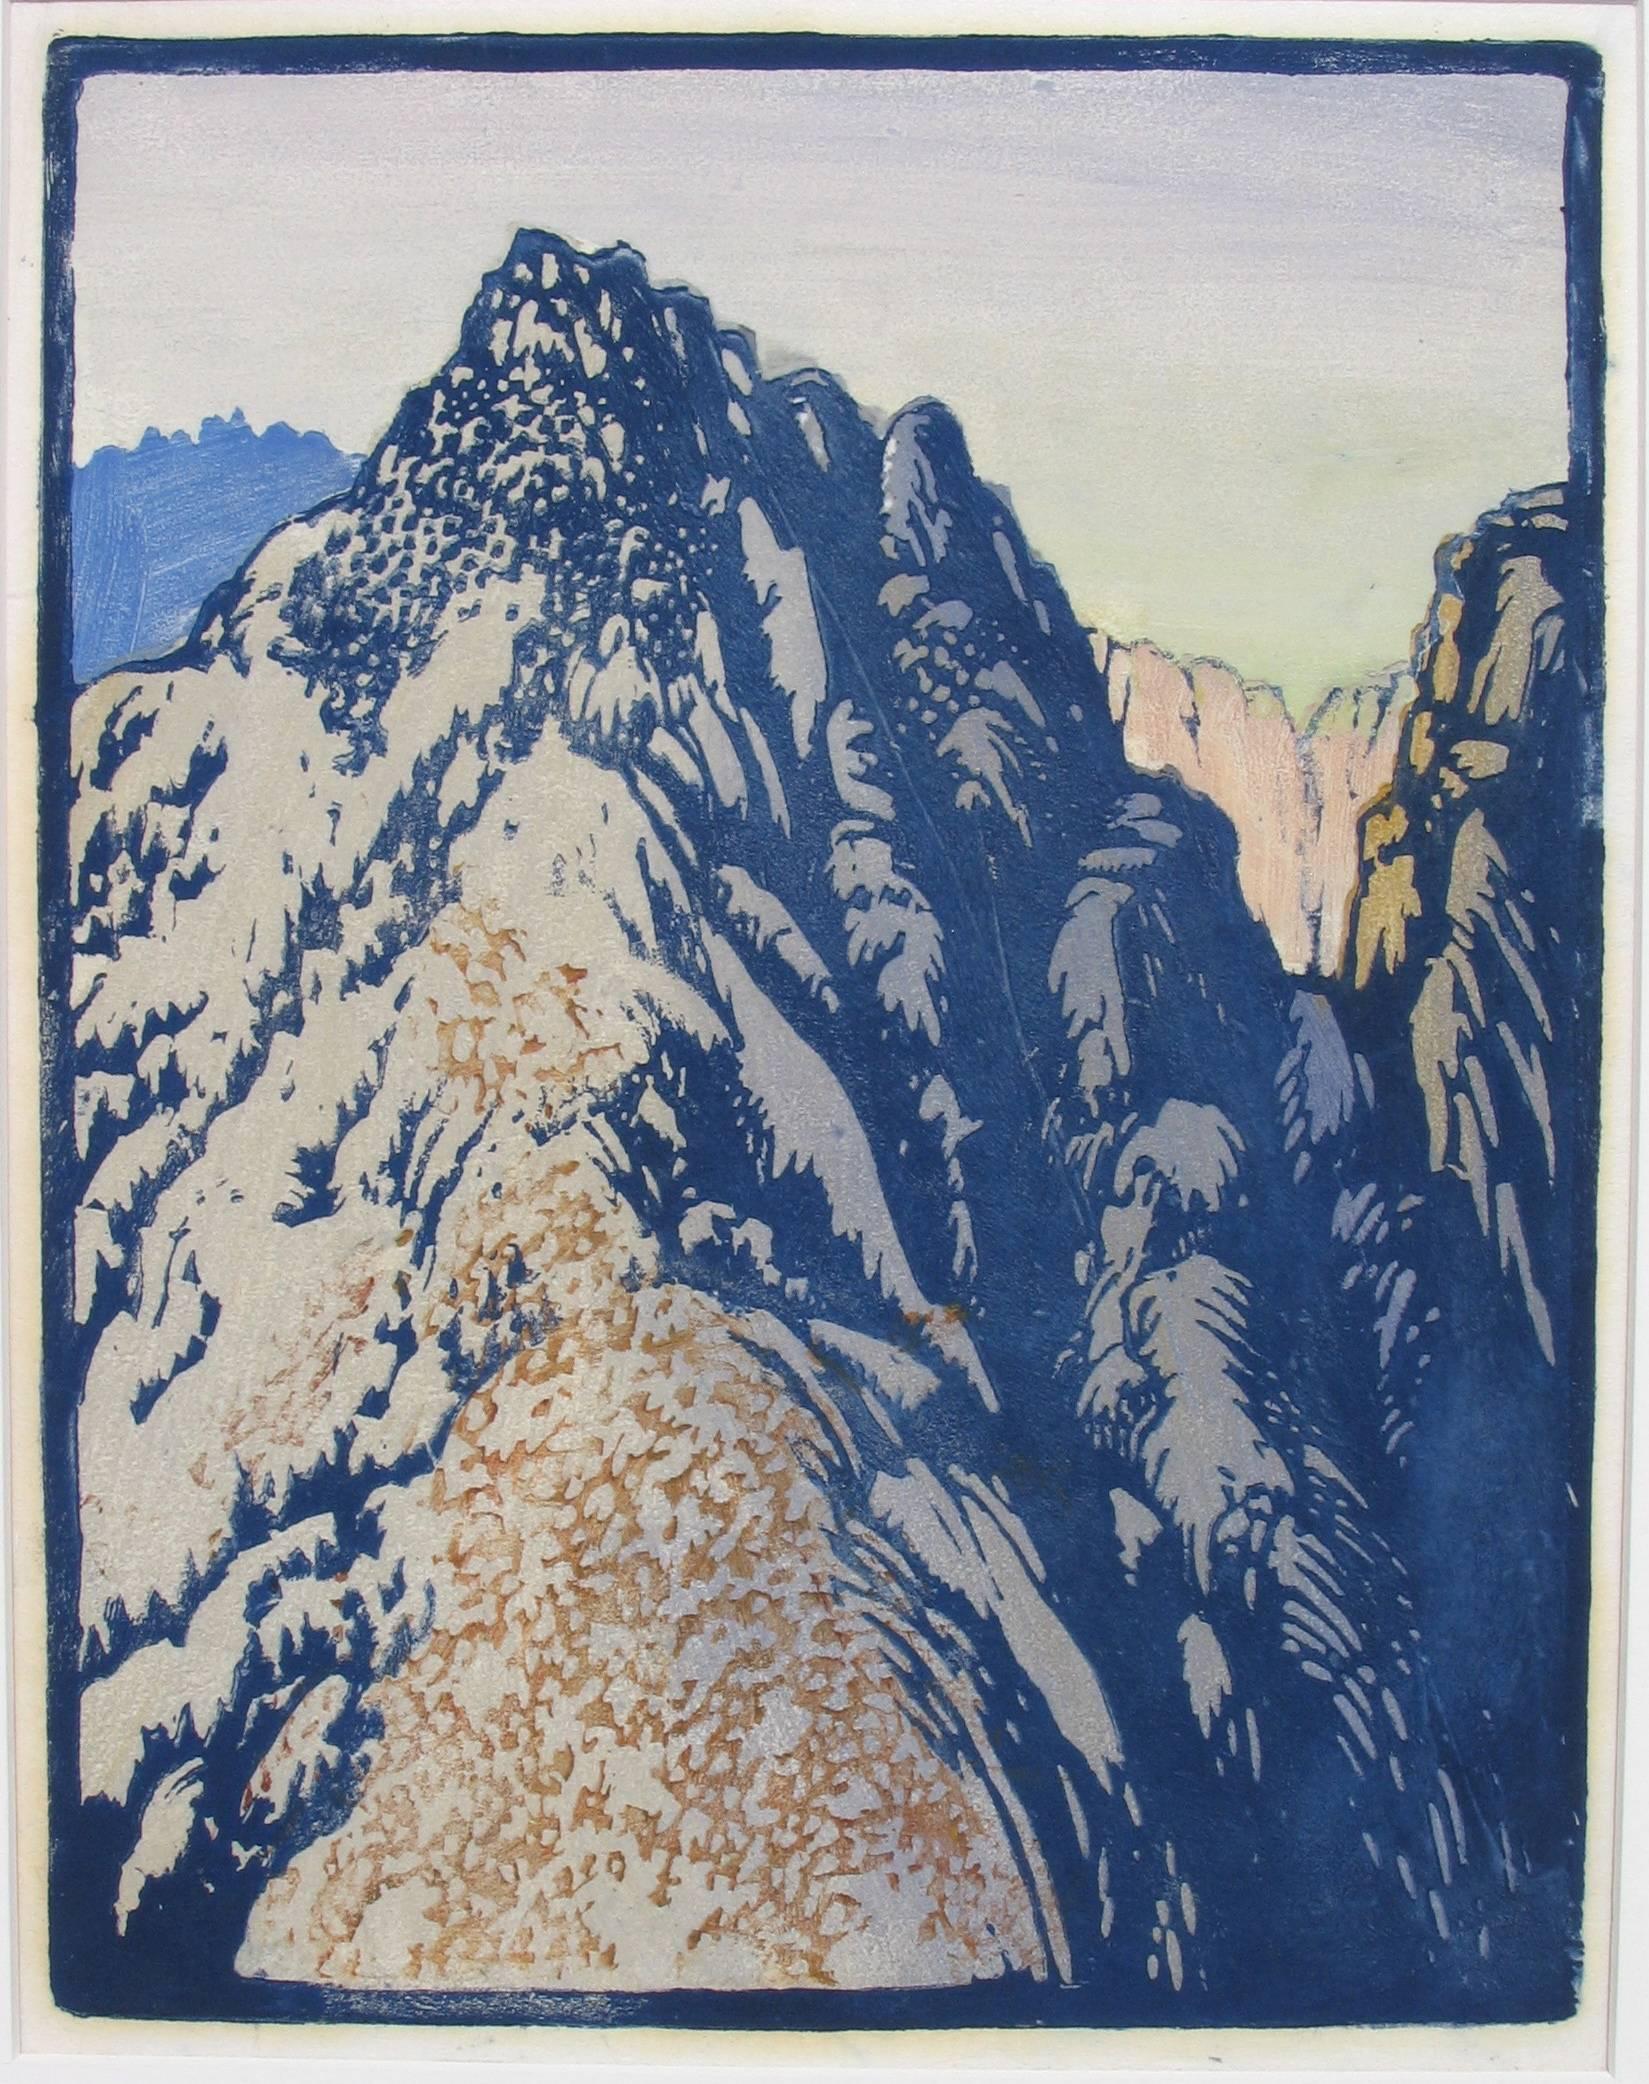 FRANCES H. GEARHART (1869-1958)

WÜSTENBARRIERNE  c. 1933
Farbblockdruck, unsigniert  12 x 9 ¼